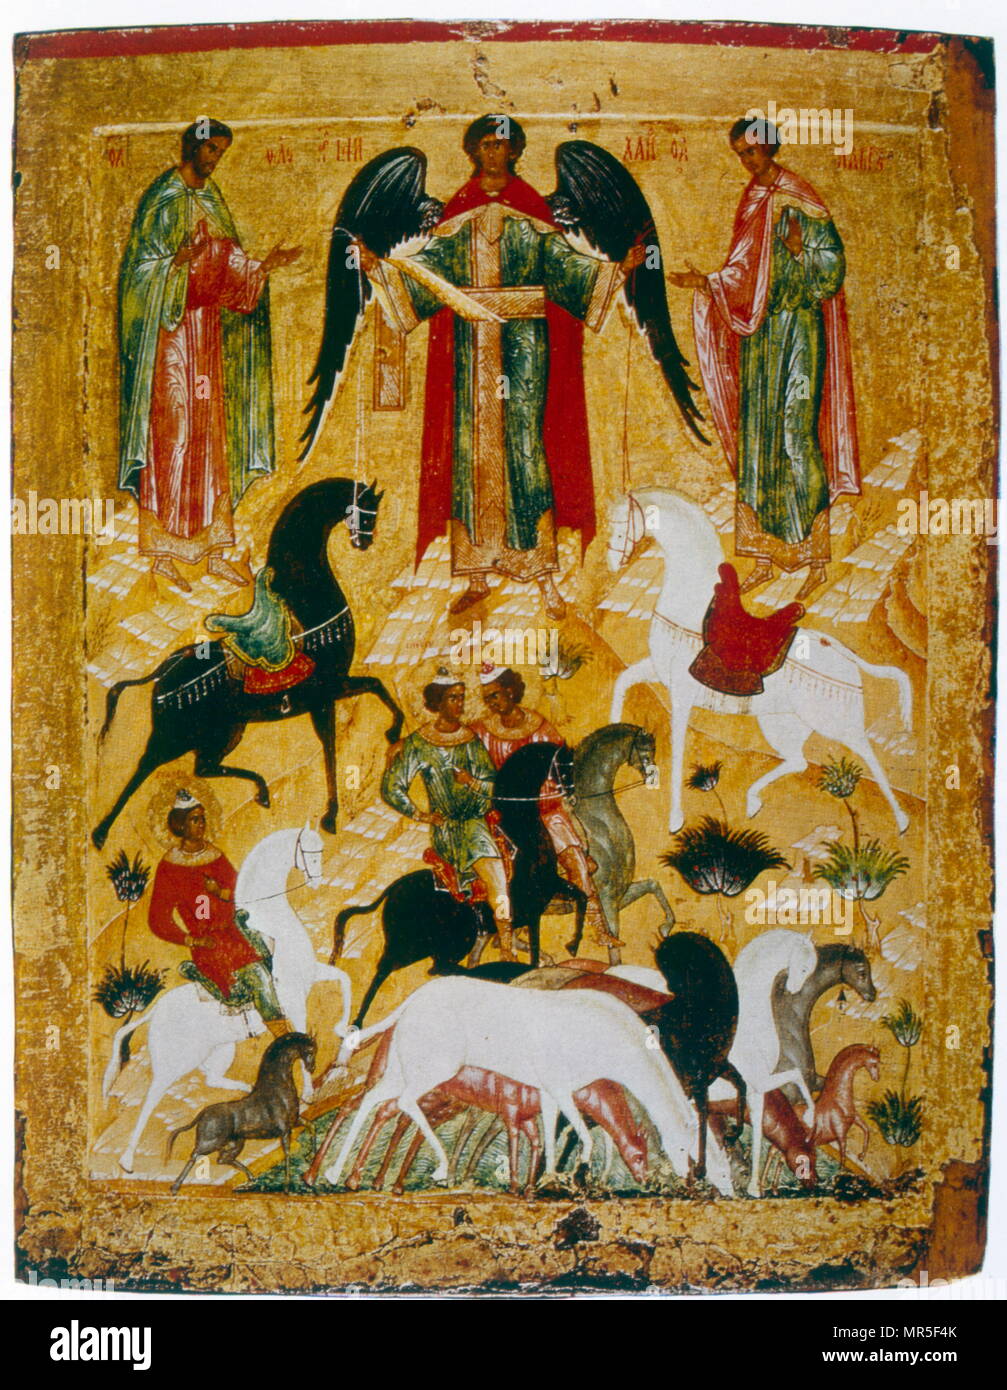 Xv secolo icona russa raffigurante il miracolo di Florus e Laurus. Tempera su pannello, scuola di Novgorod Foto Stock